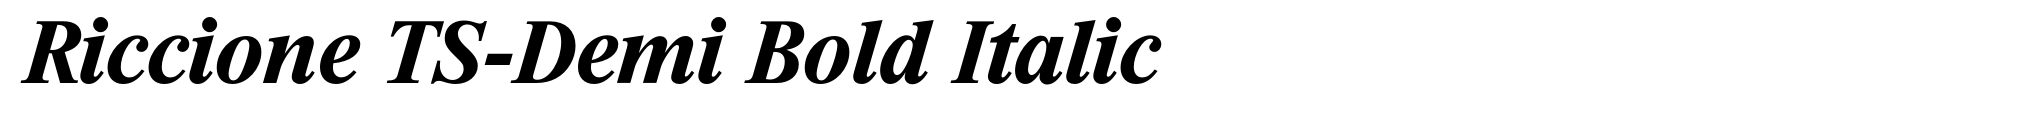 Riccione TS-Demi Bold Italic image